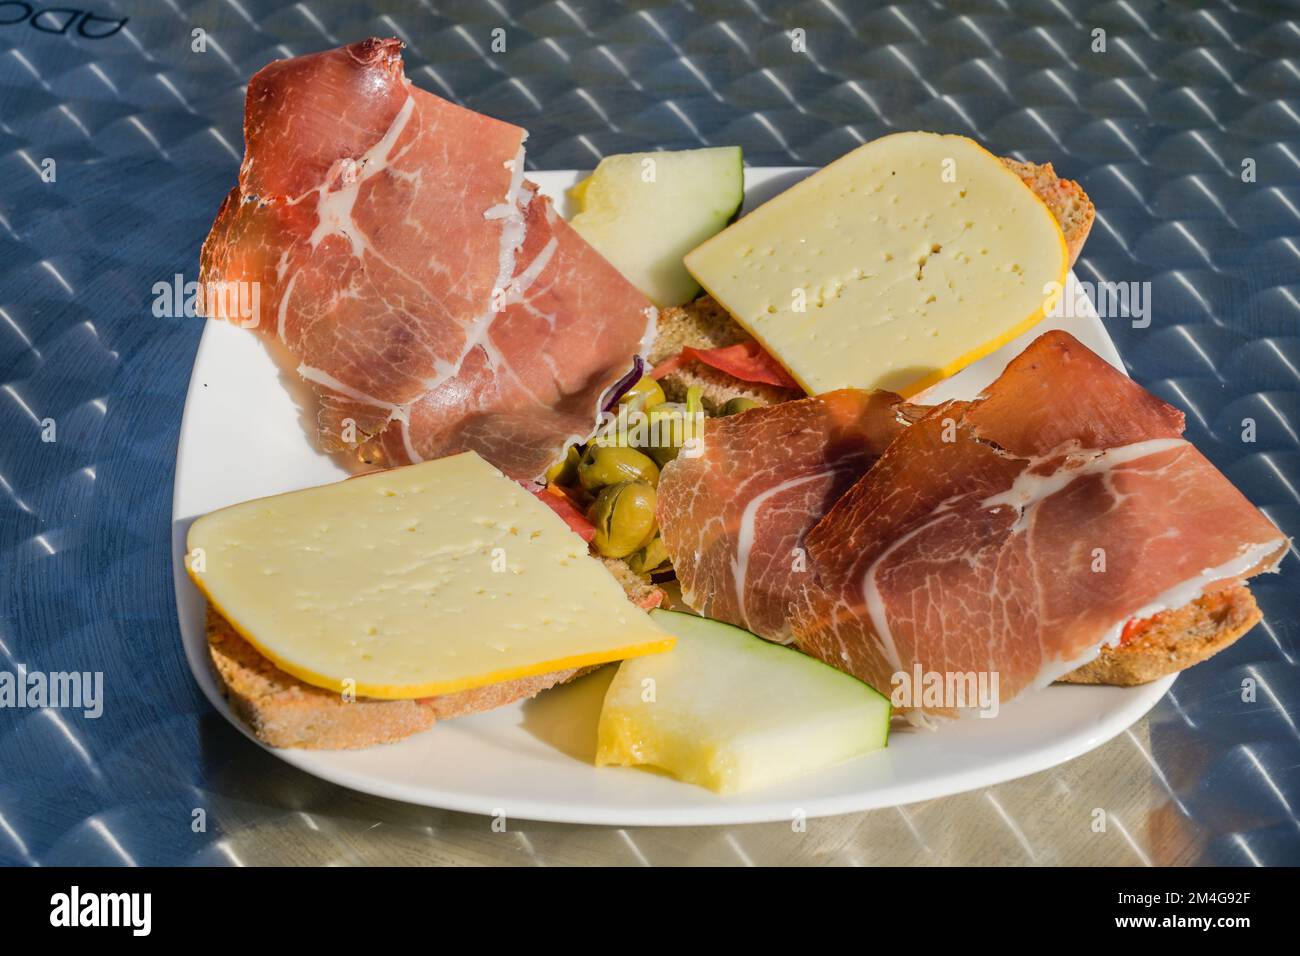 Brot mit Schinken und Käse, Pa amb oli, Mallorca, Spanien Stock Photo